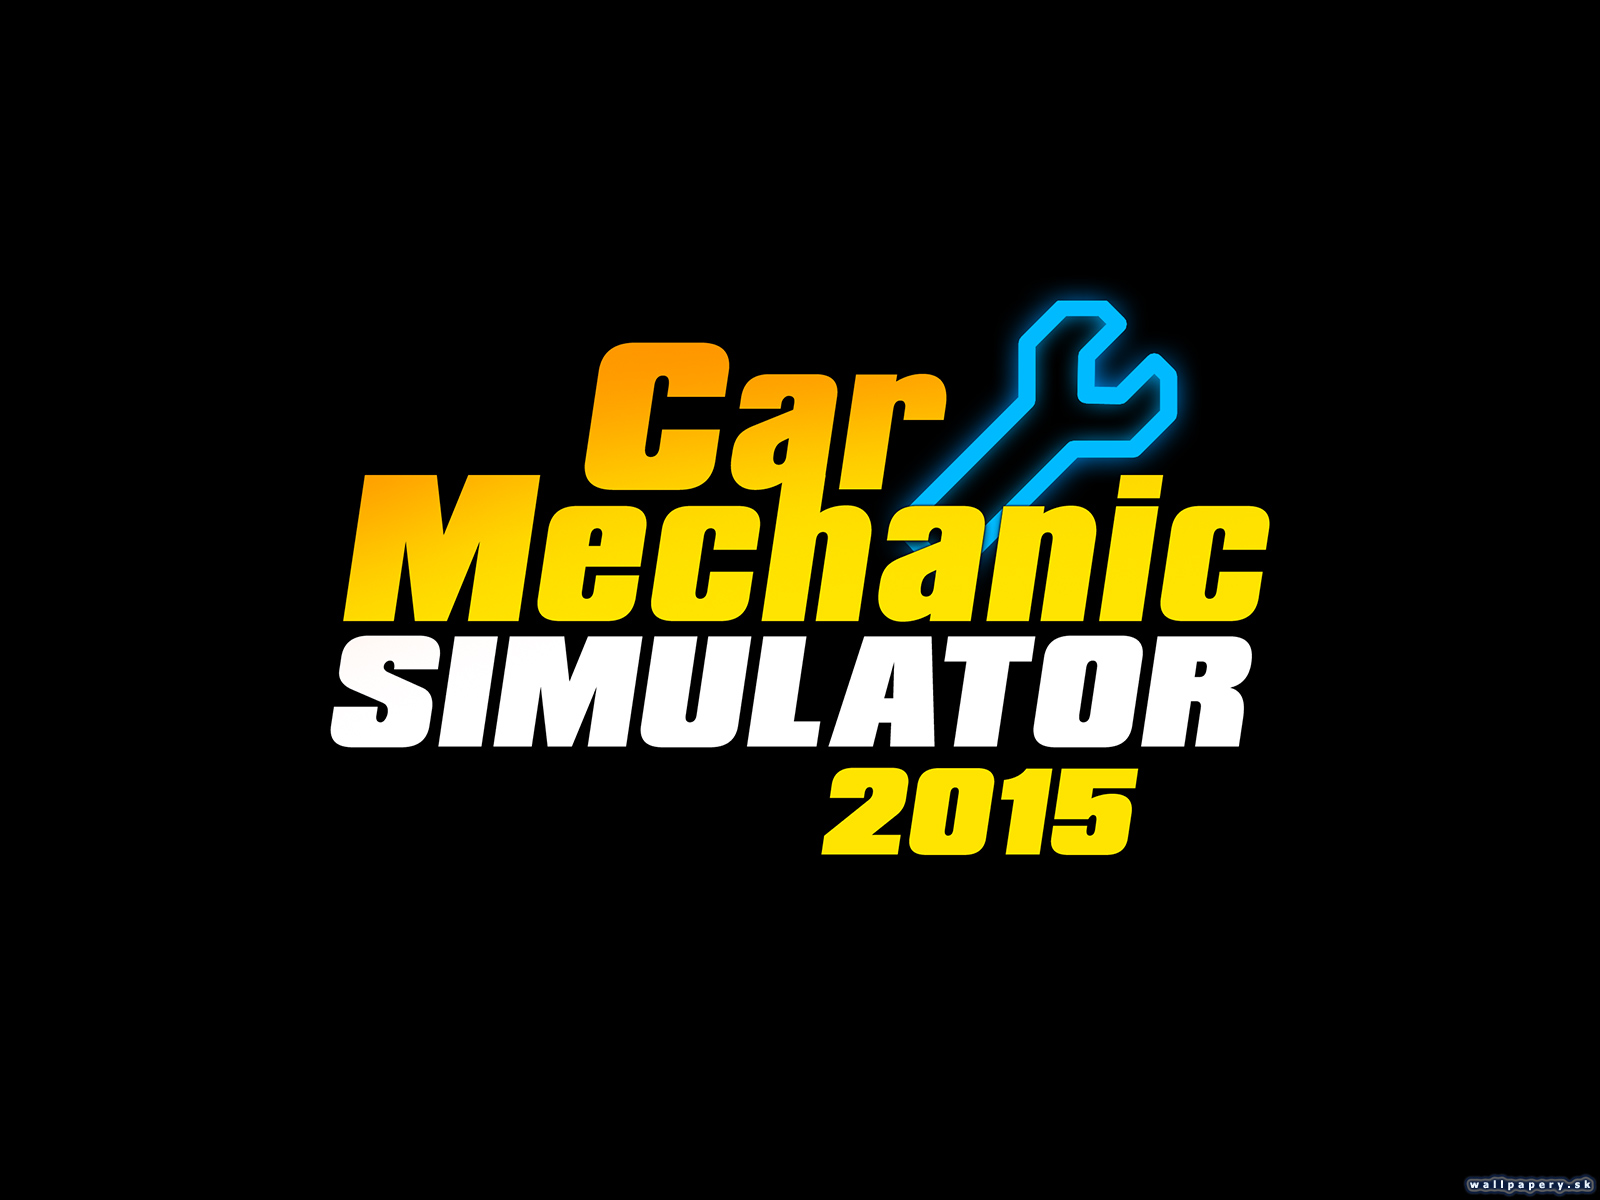 Car Mechanic Simulator 2015 - wallpaper 2